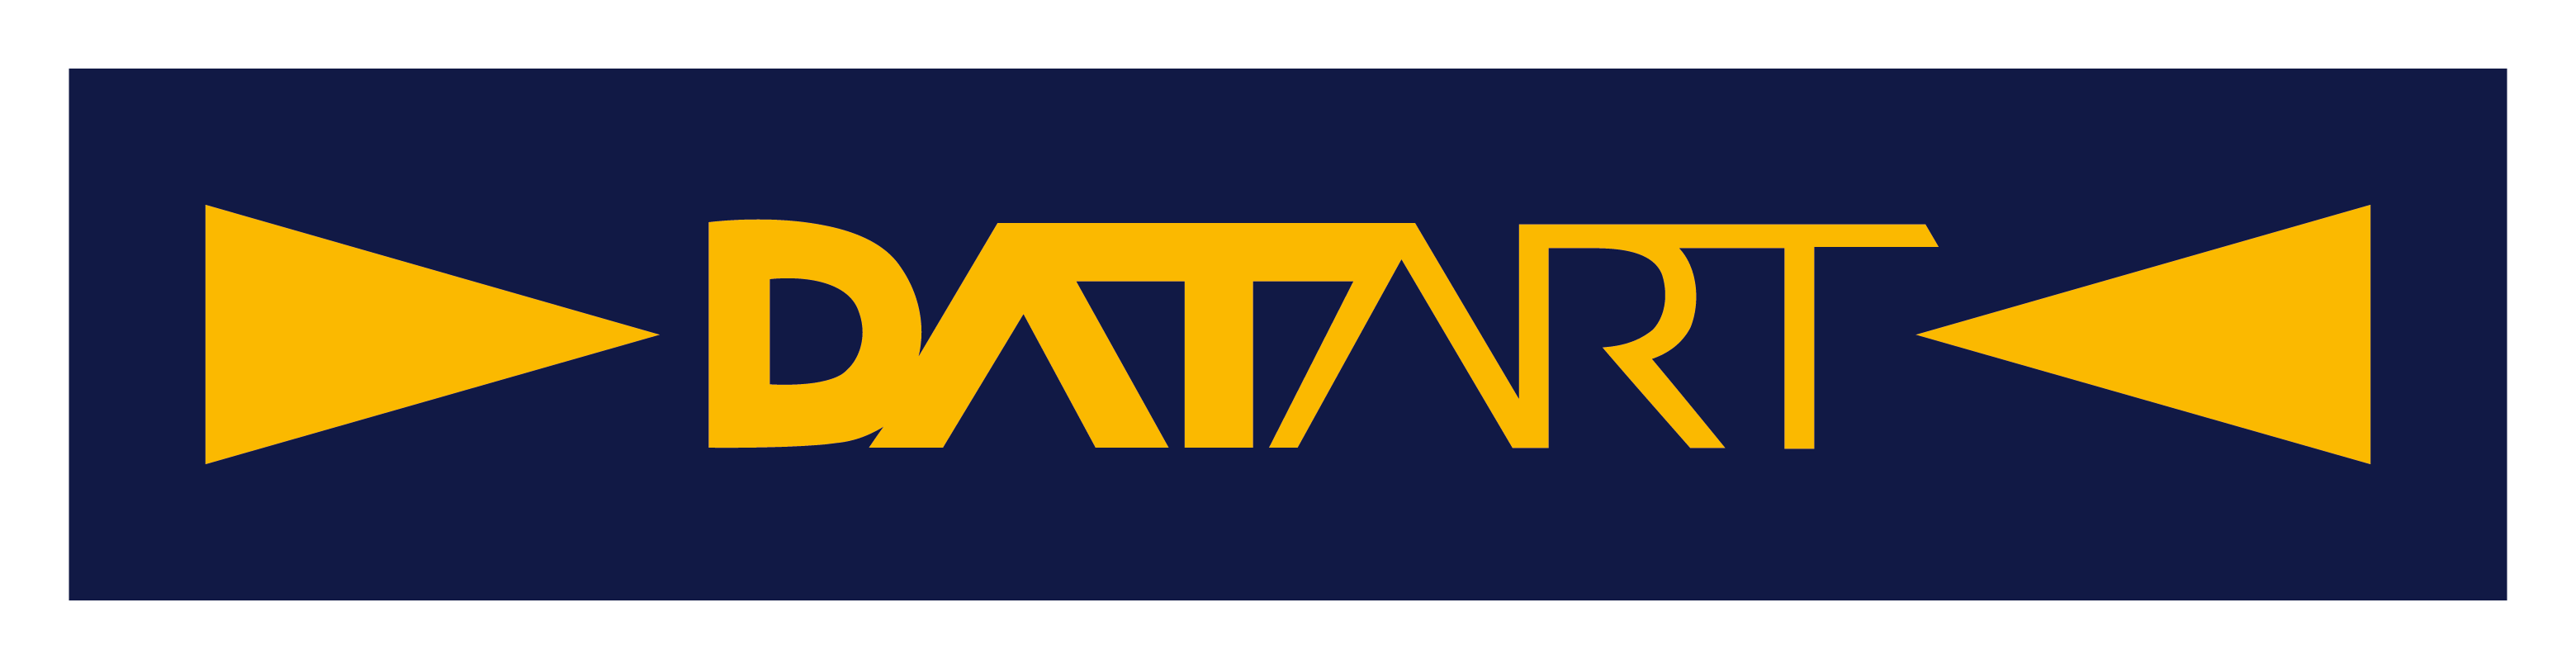 datart logo